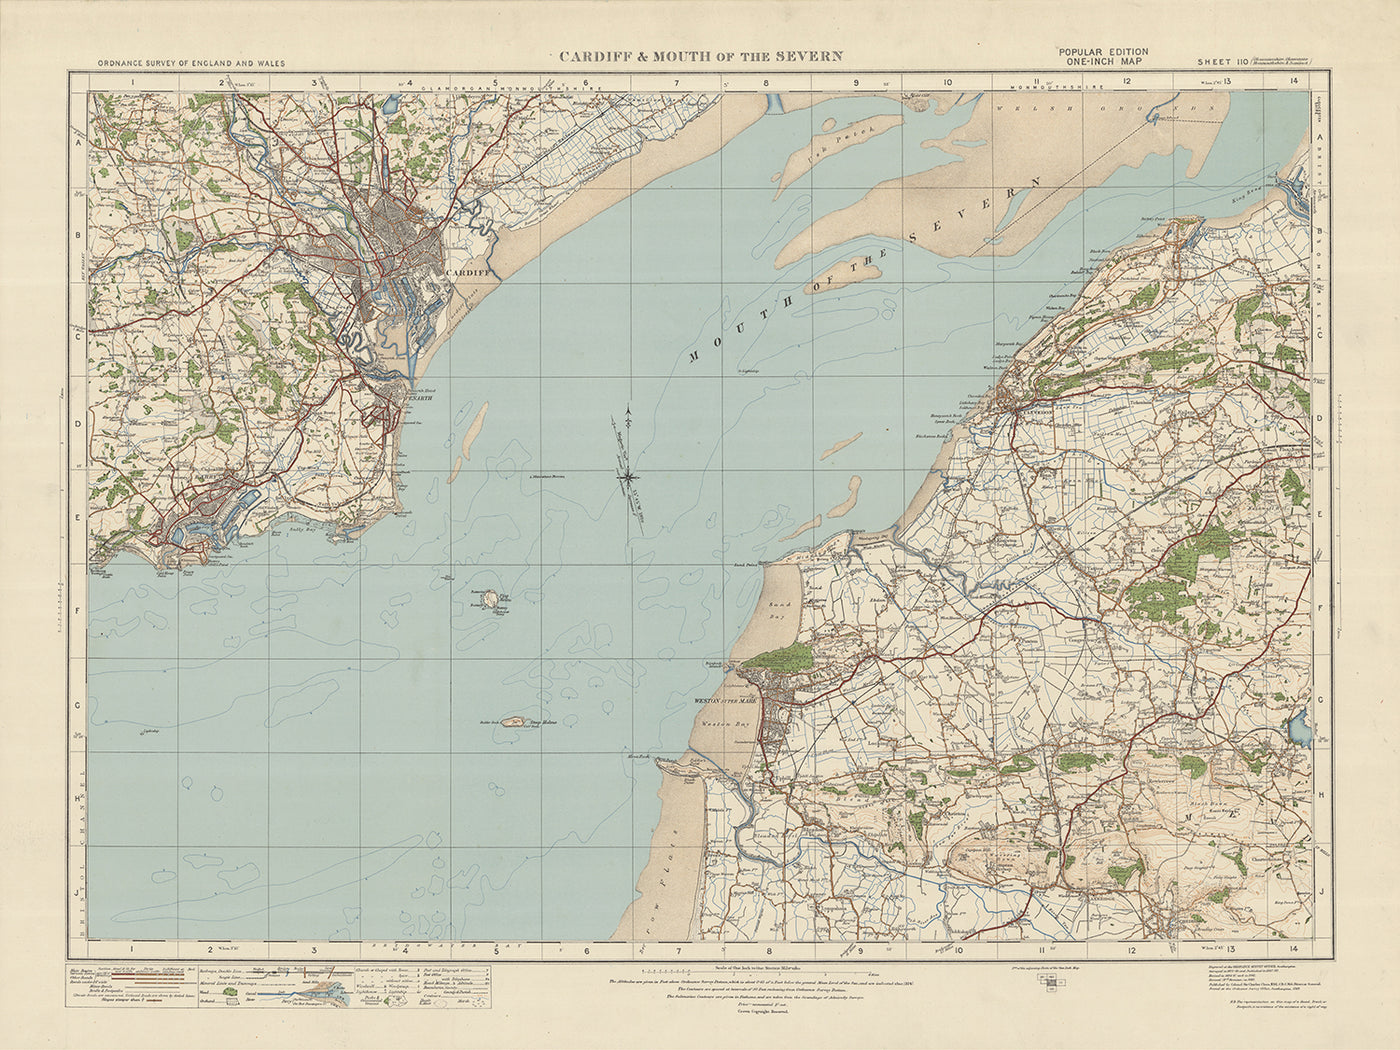 Carte Old Ordnance Survey, feuille 110 - Cardiff et embouchure de la Severn, 1925 : Barry, Weston-super-Mare, Clevedon, Penarth, Mendip Hills AONB